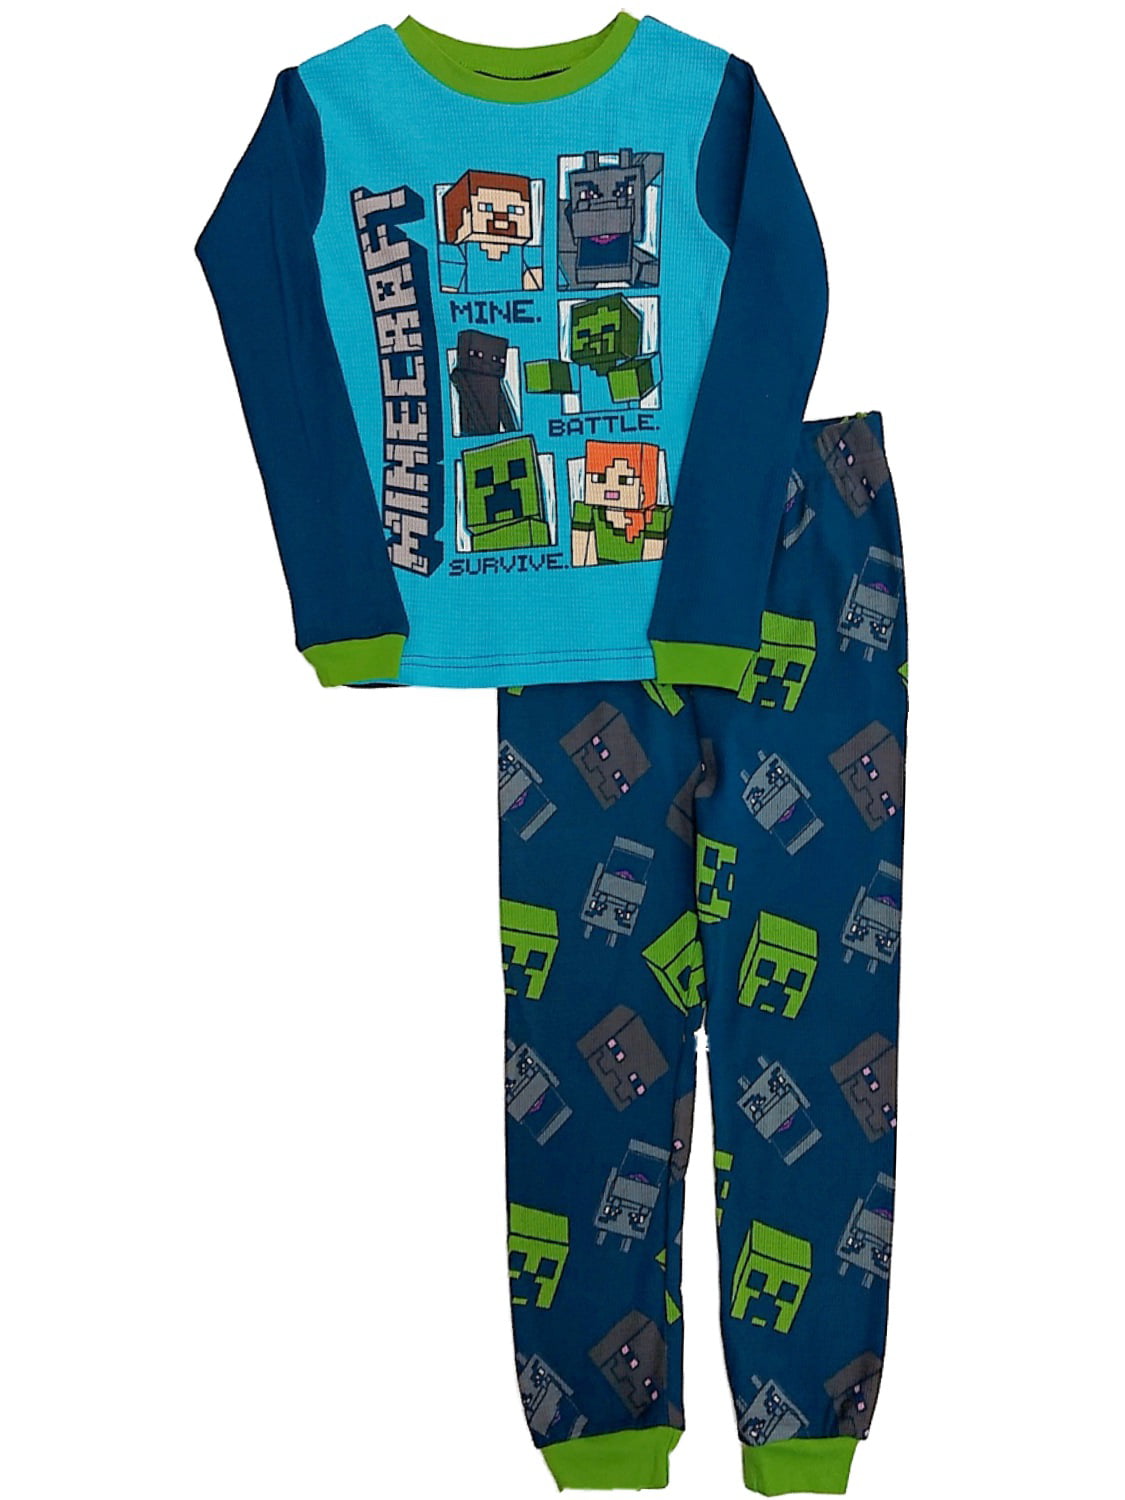 NWT Boys Fun Thermal Underwear Set Minecraft Cotton Waffle Knit Warm Blue Green 